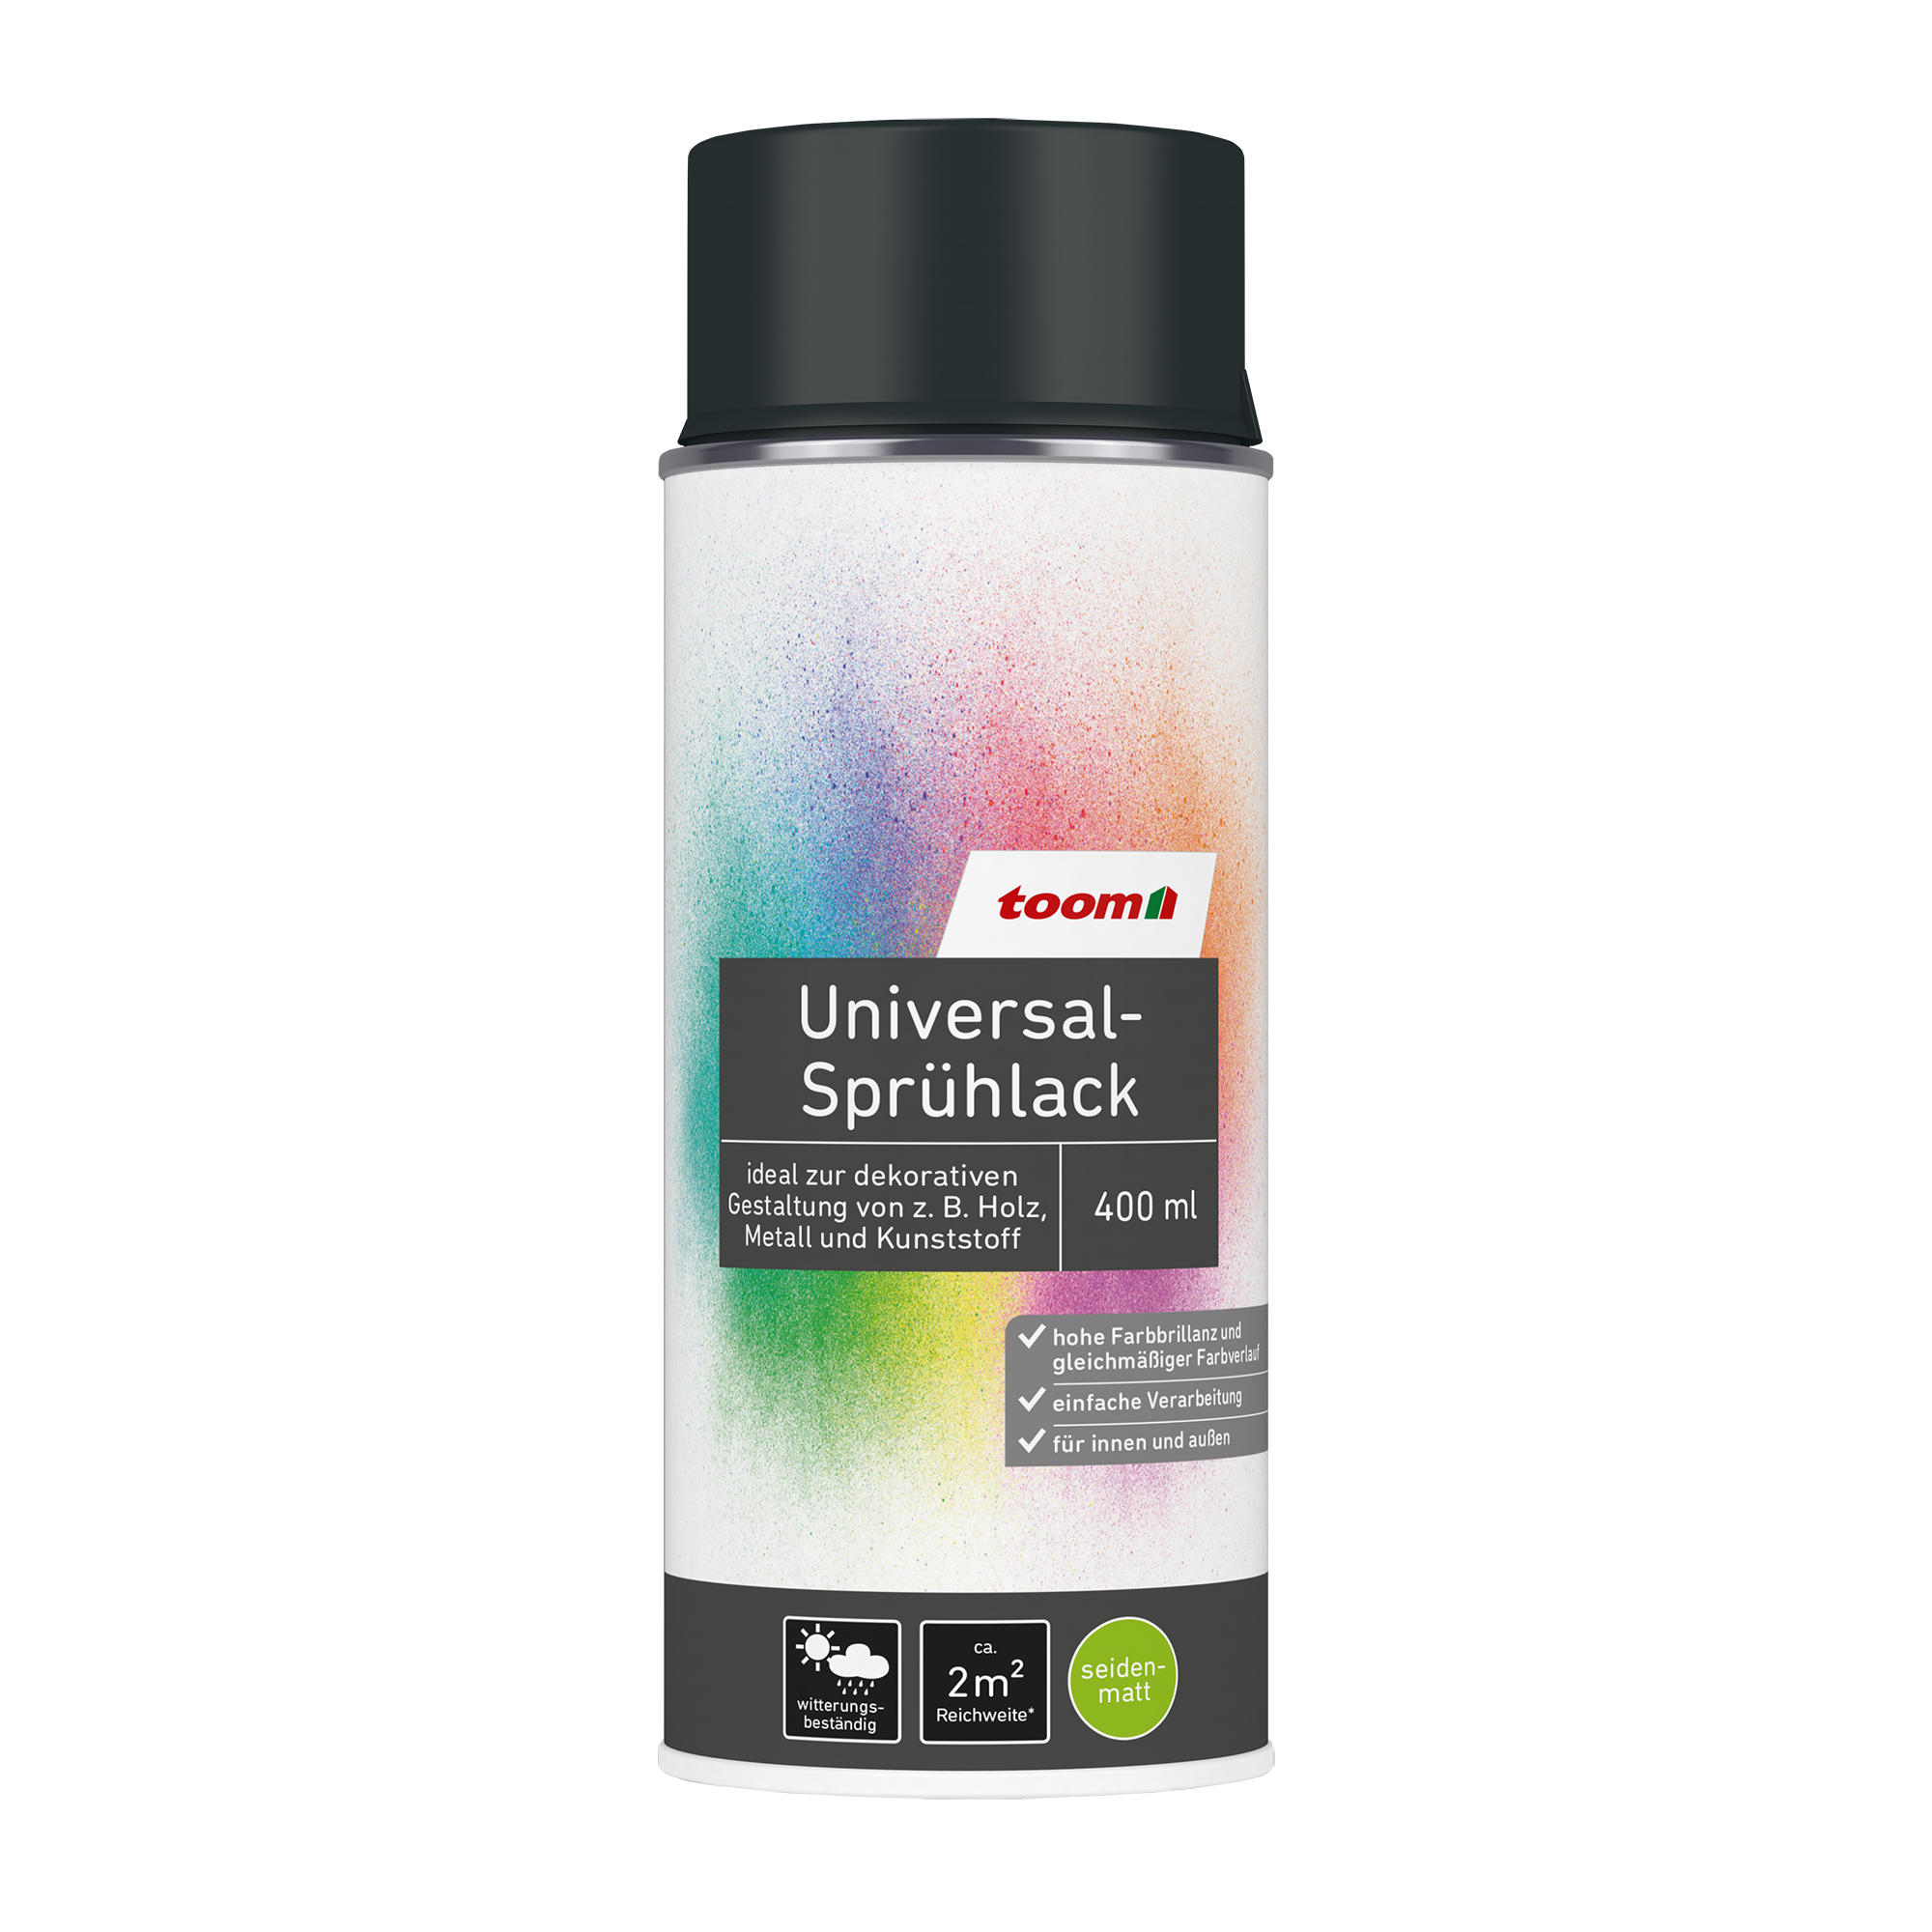 Universal-Sprühlack 'Schattenspiel' anthrazitfarben seidenmatt 400 ml + product picture